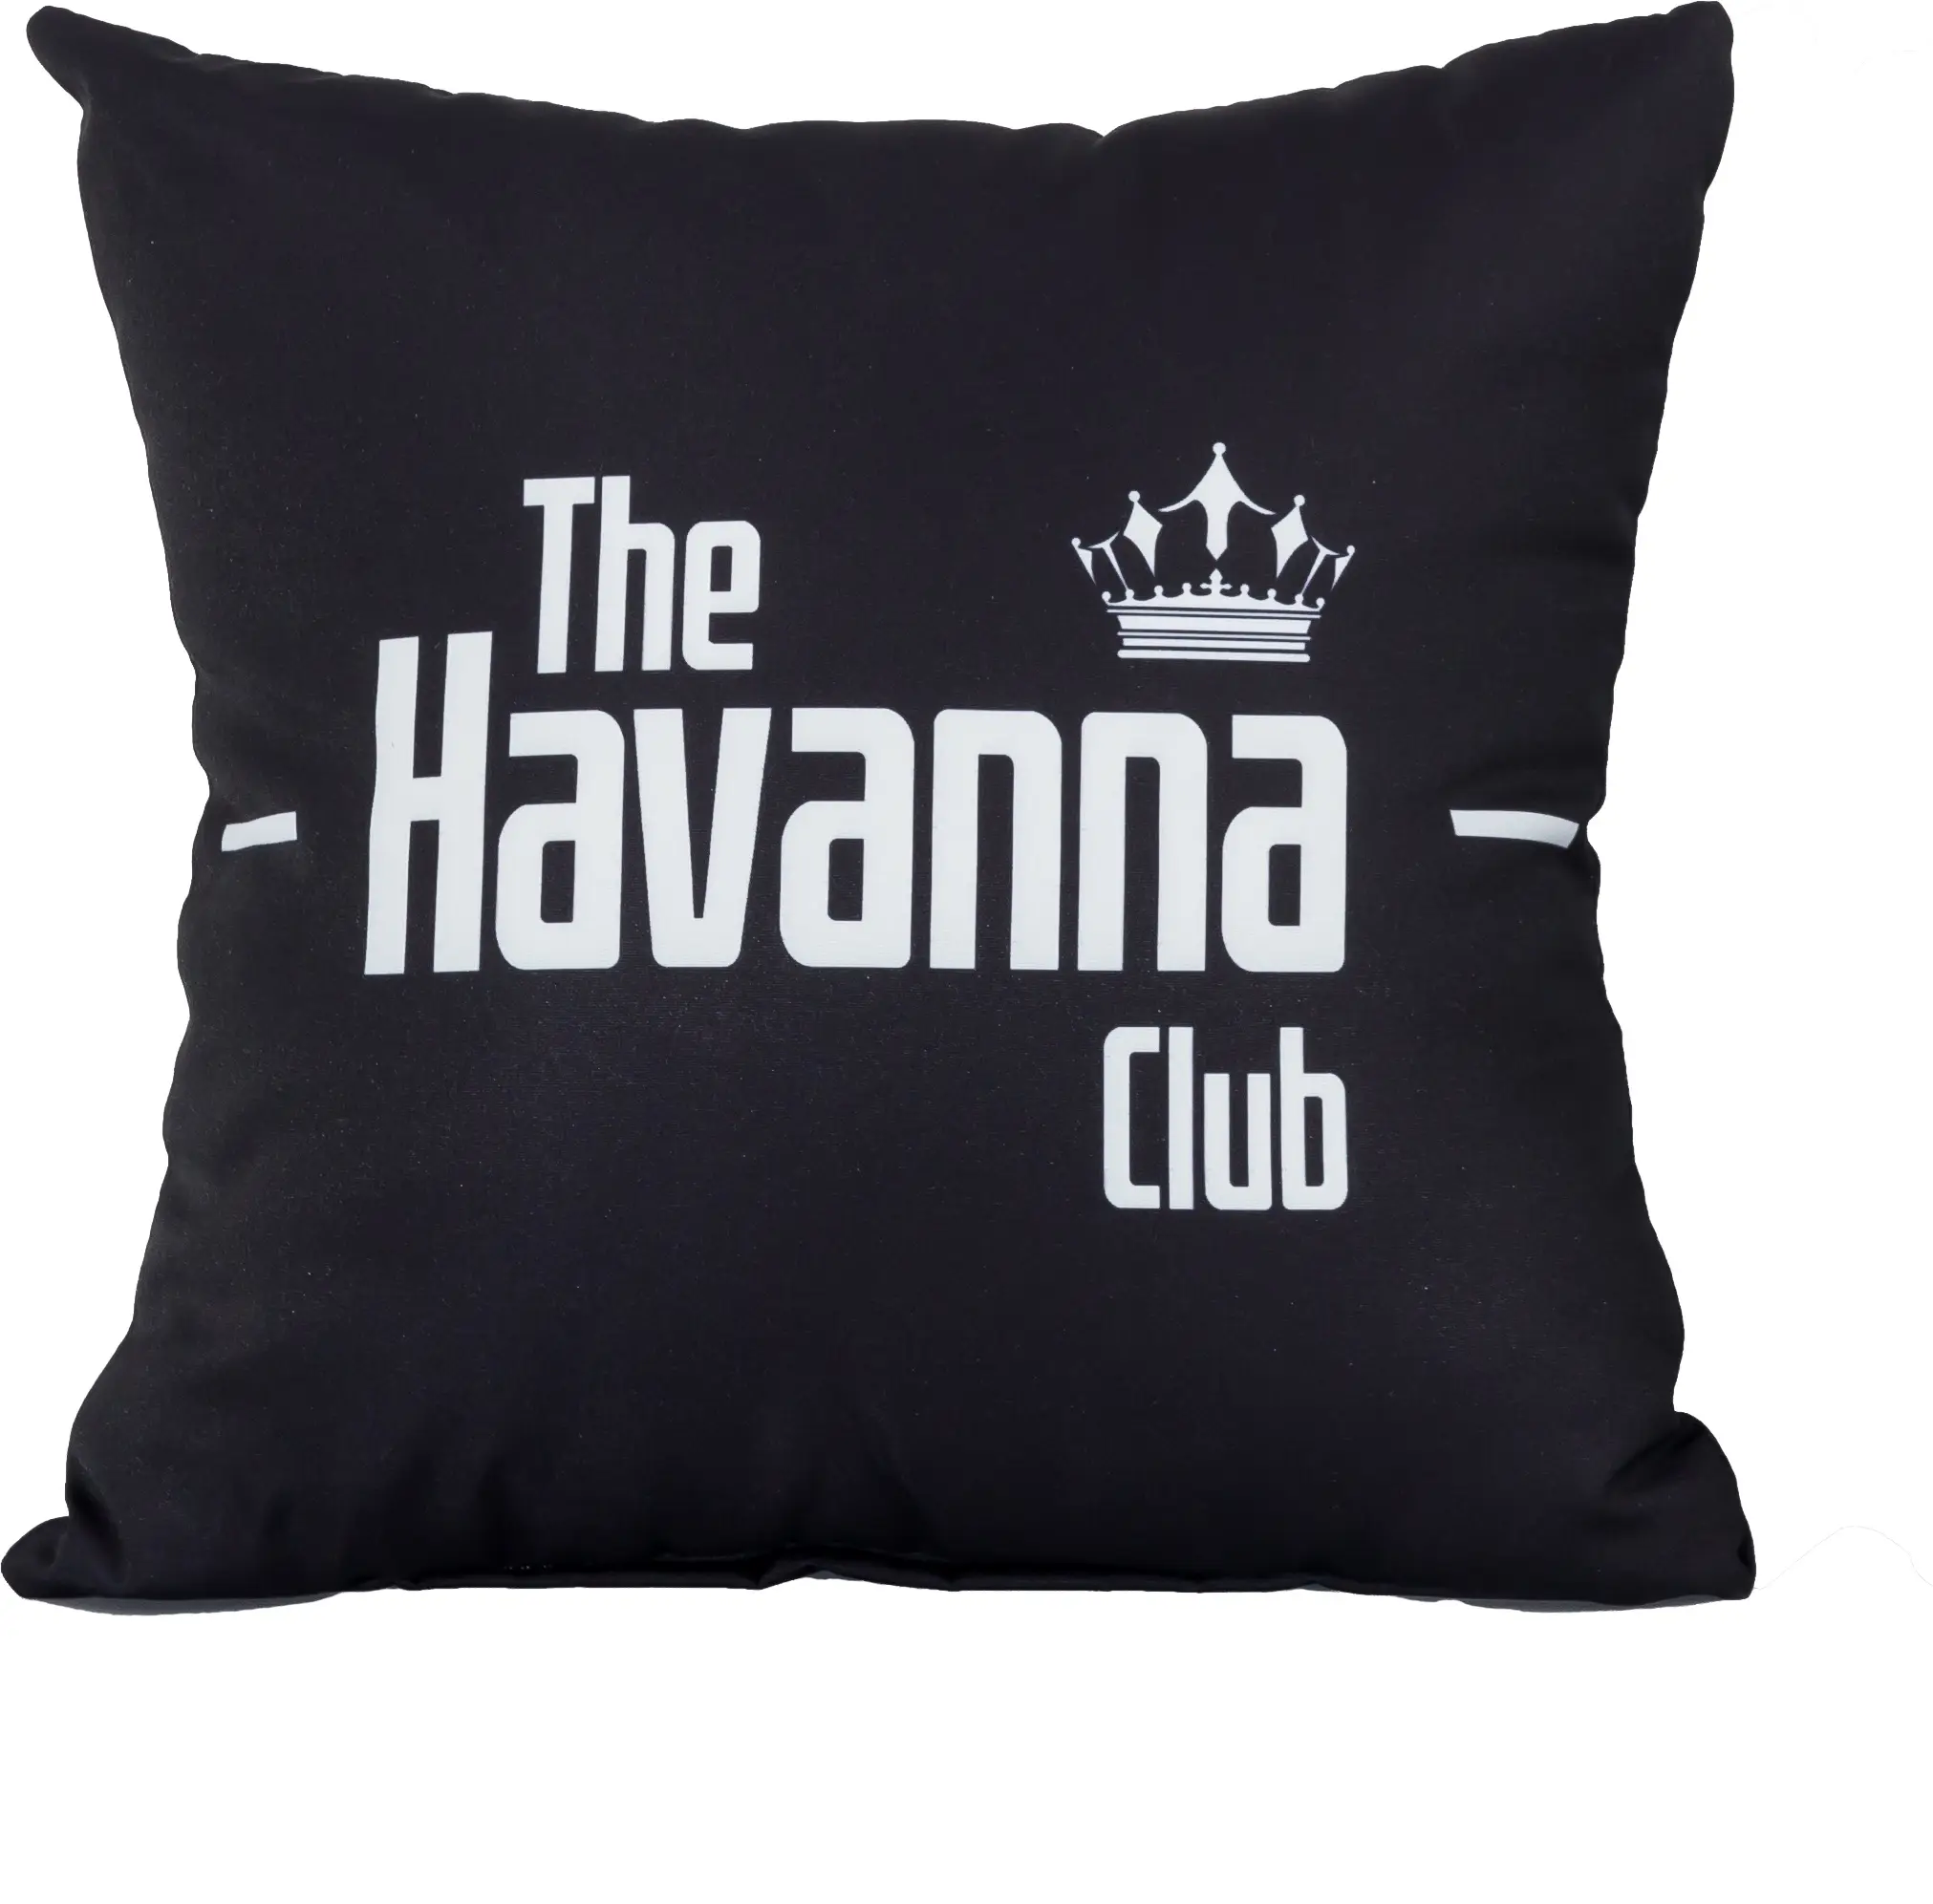 Wir stellen supergünstige Produkte vor Kissenh眉lle The Havanna Club